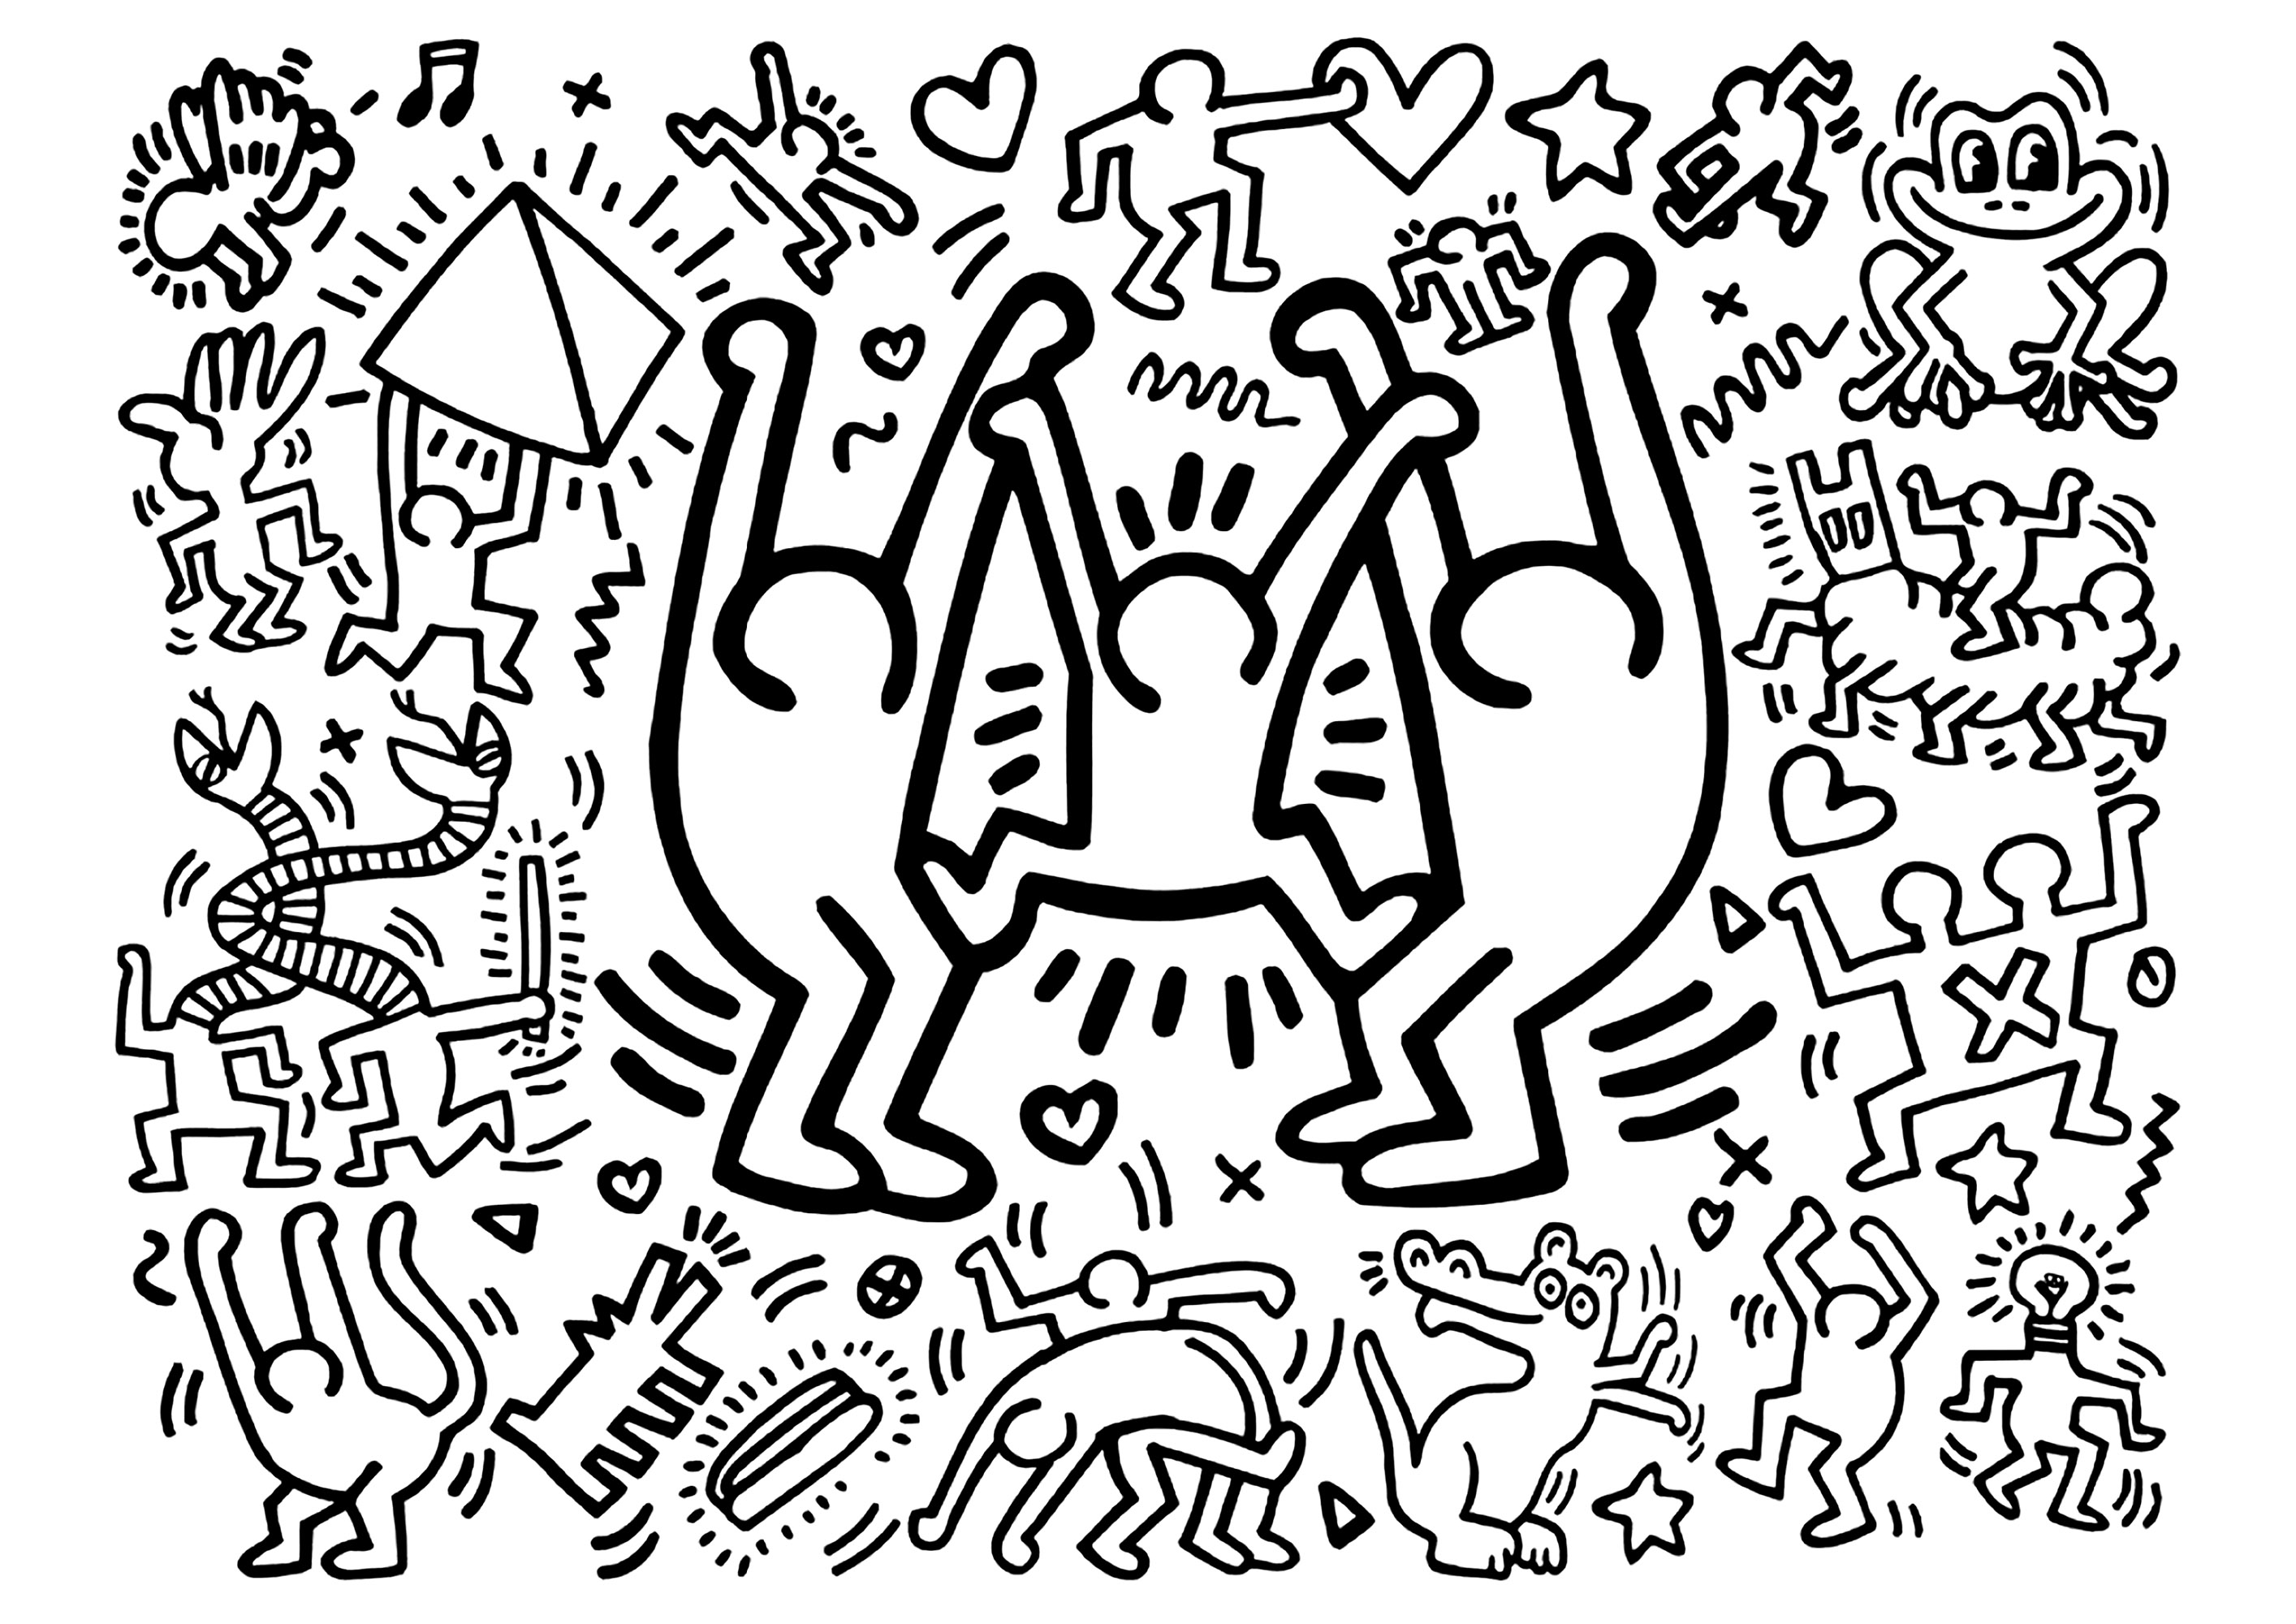 Keith Haring: Tres grandes y alegres personajes y algunos más pequeños. Un libro para colorear basado en una obra de Keith Haring